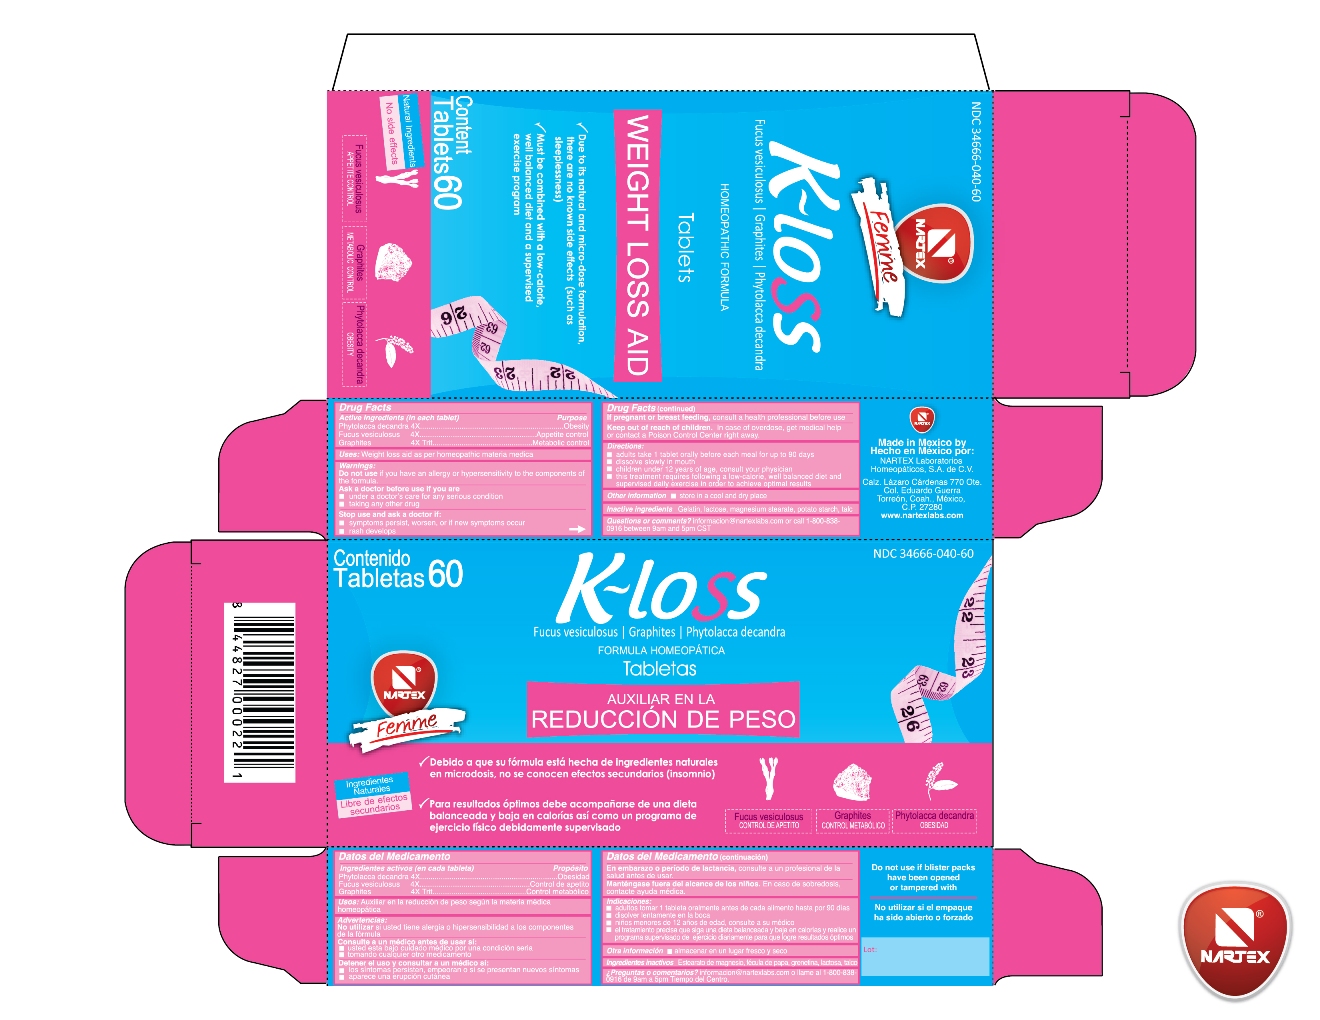 K-loss Tablet Carton